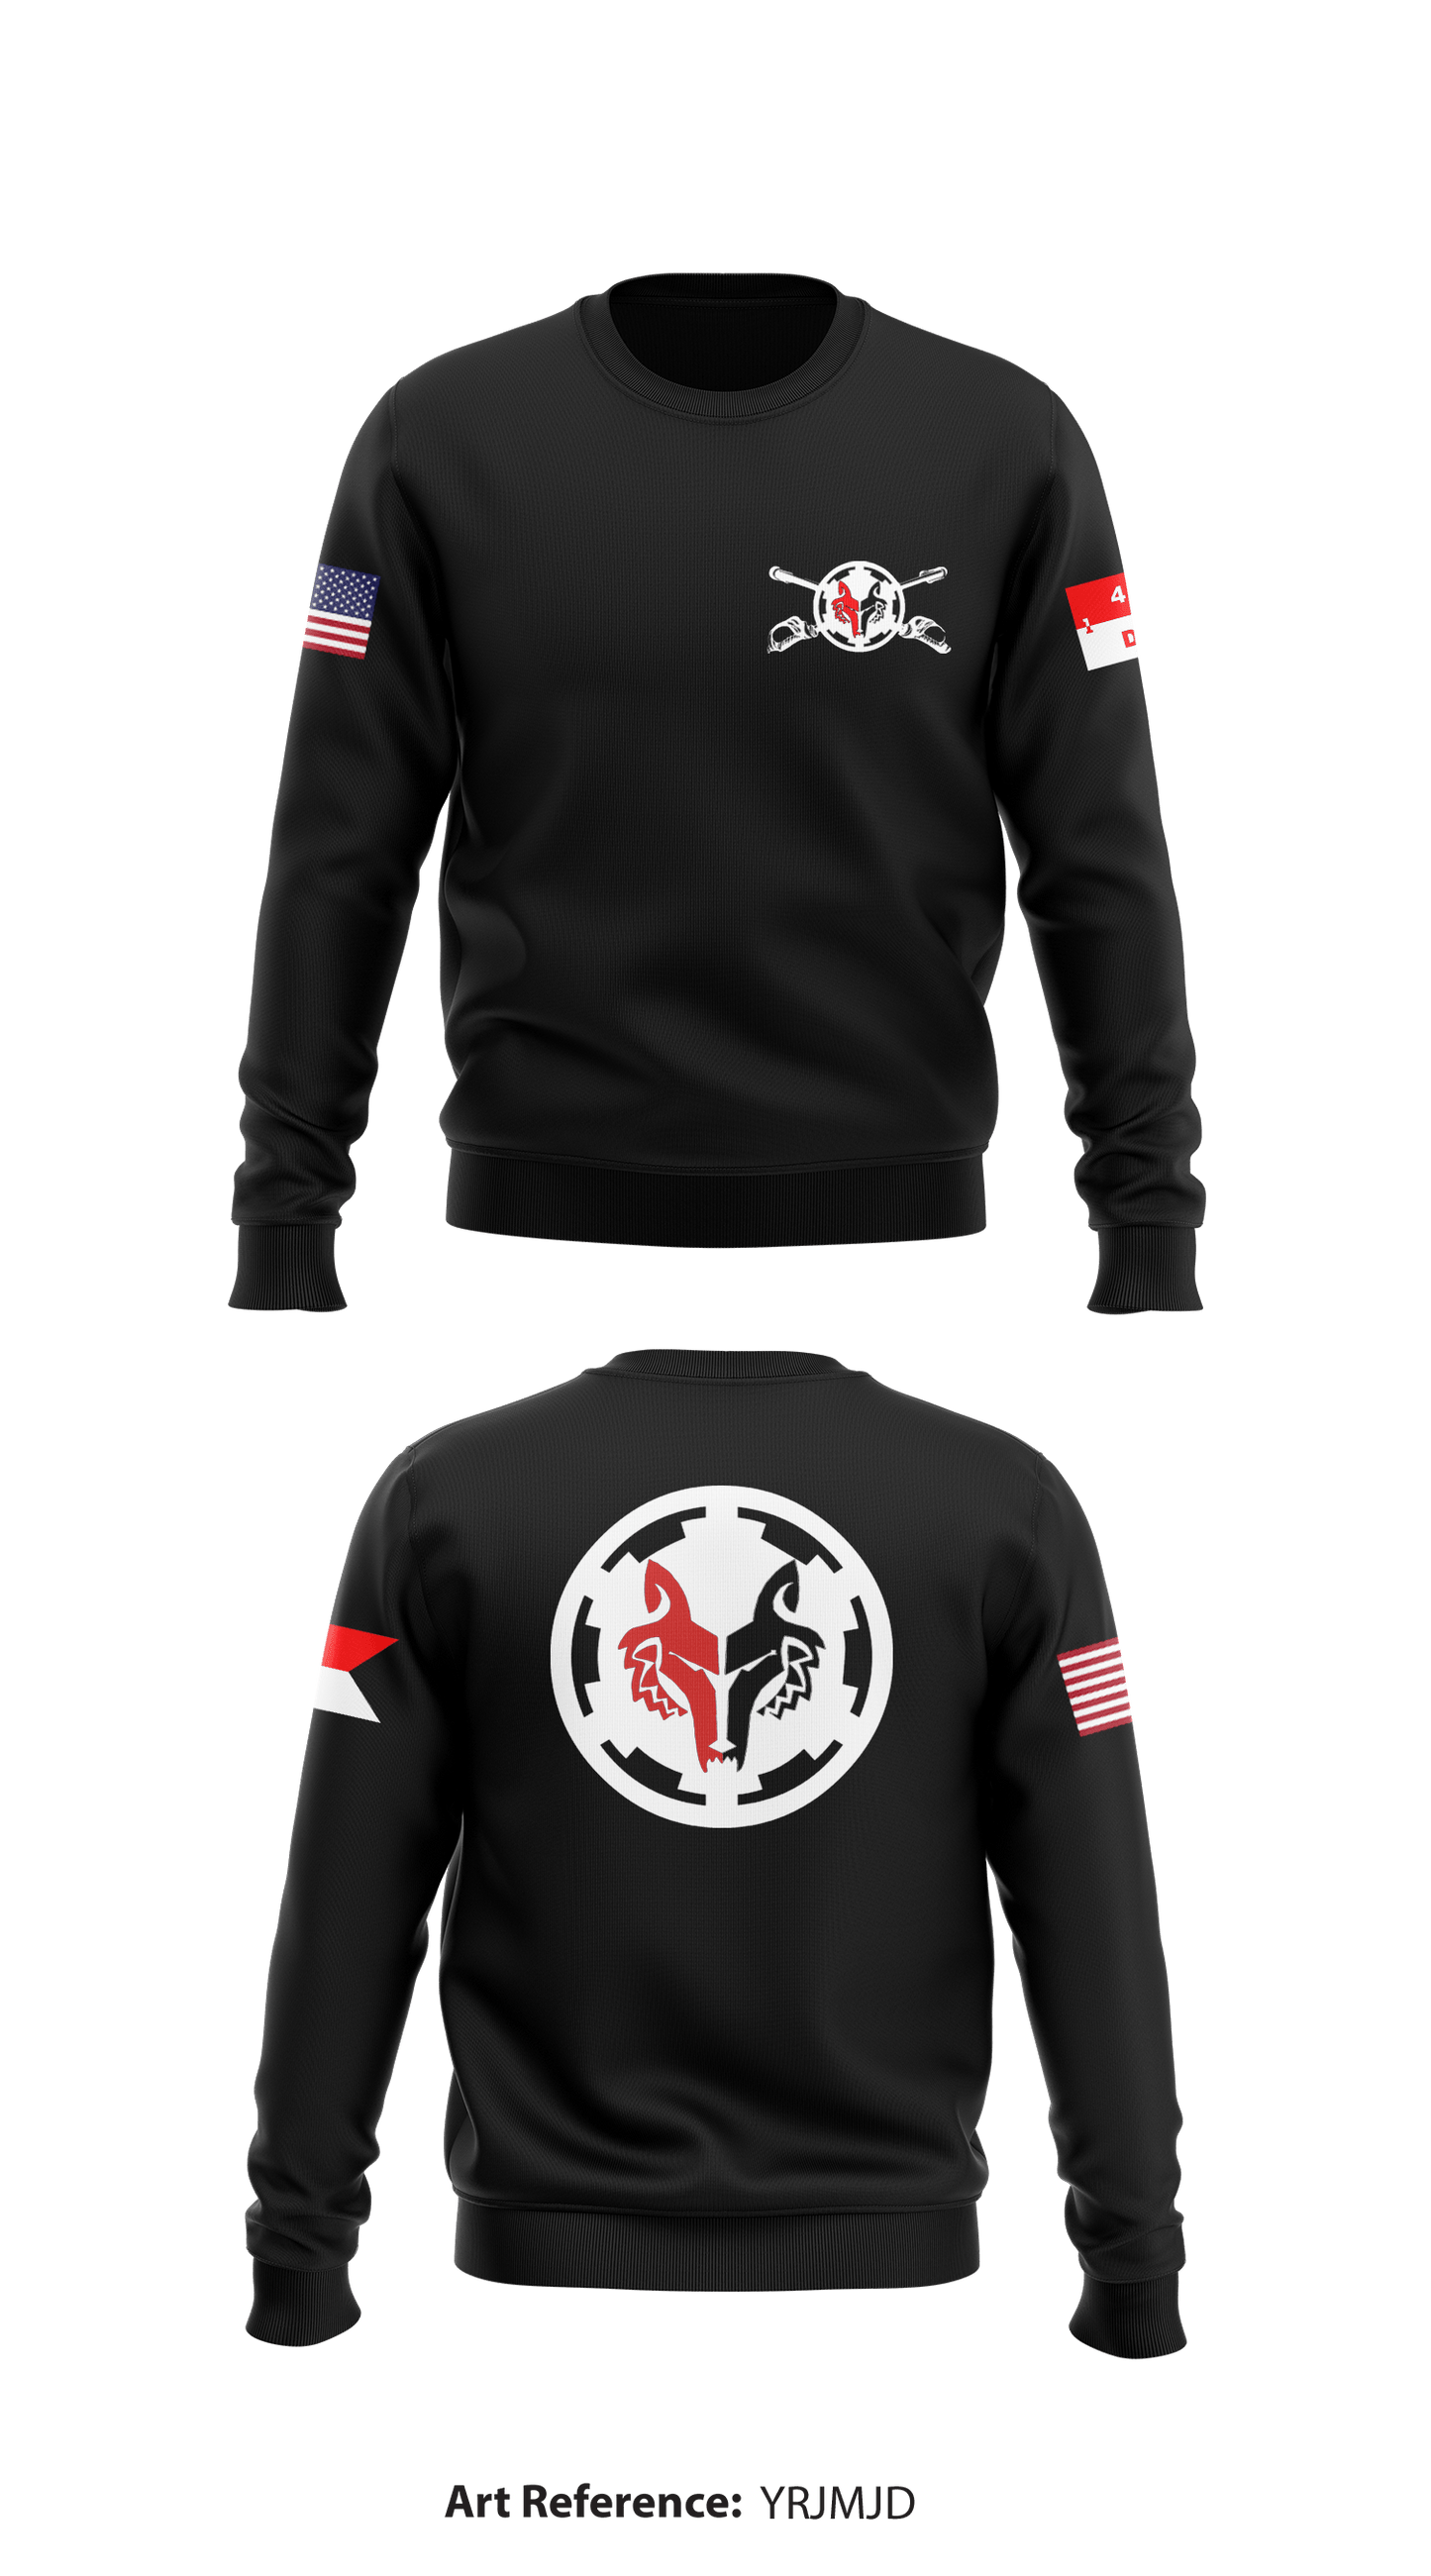 D Troop, 1-4 CAV "WOLFPACK" Store 1 Core Men's Crewneck Performance Sweatshirt - YrjMJD